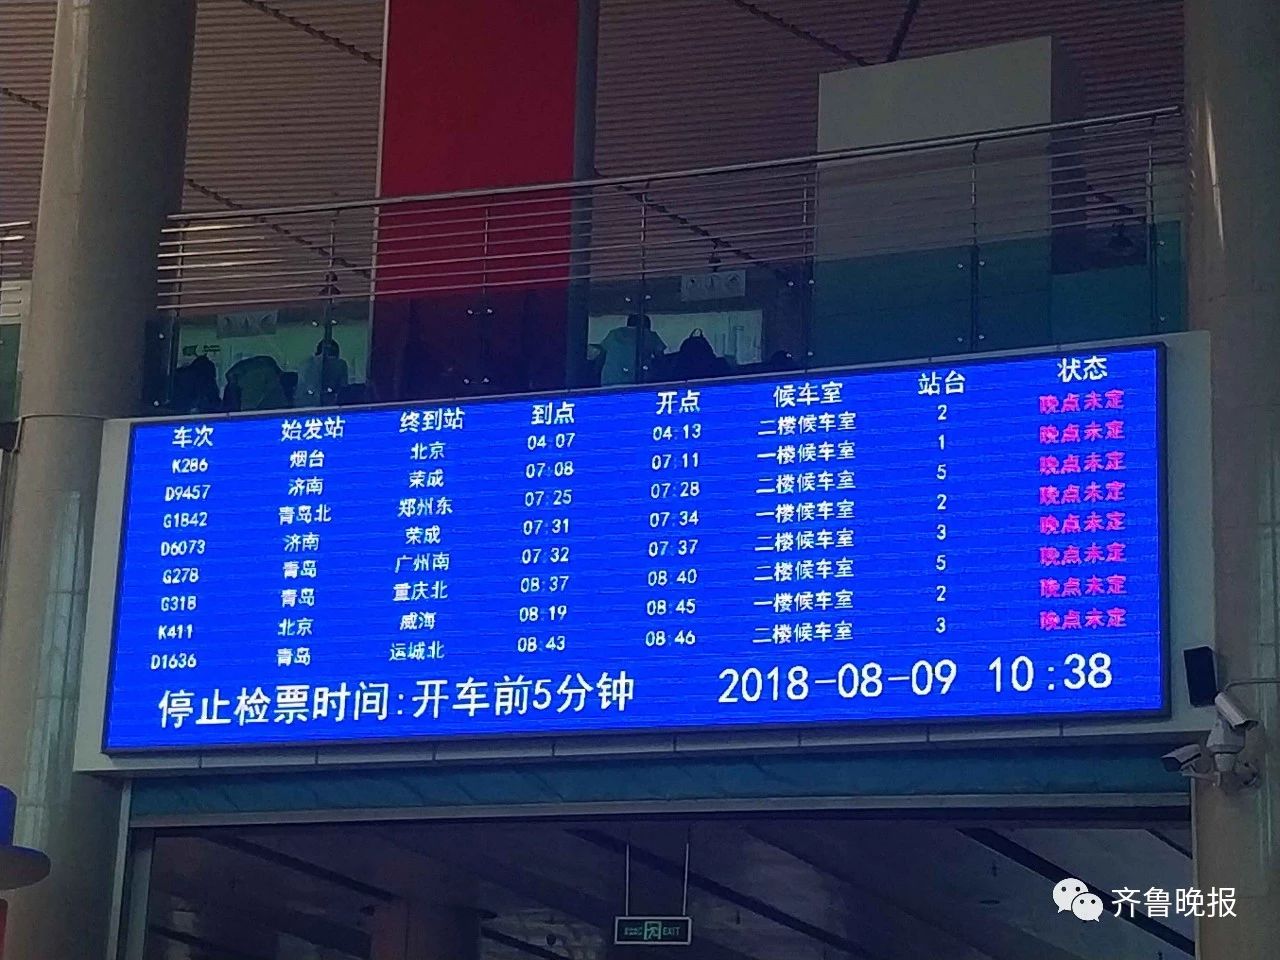 今天上午9点左右,因昌邑到潍坊间设备故障,完成胶济客专线部分列车